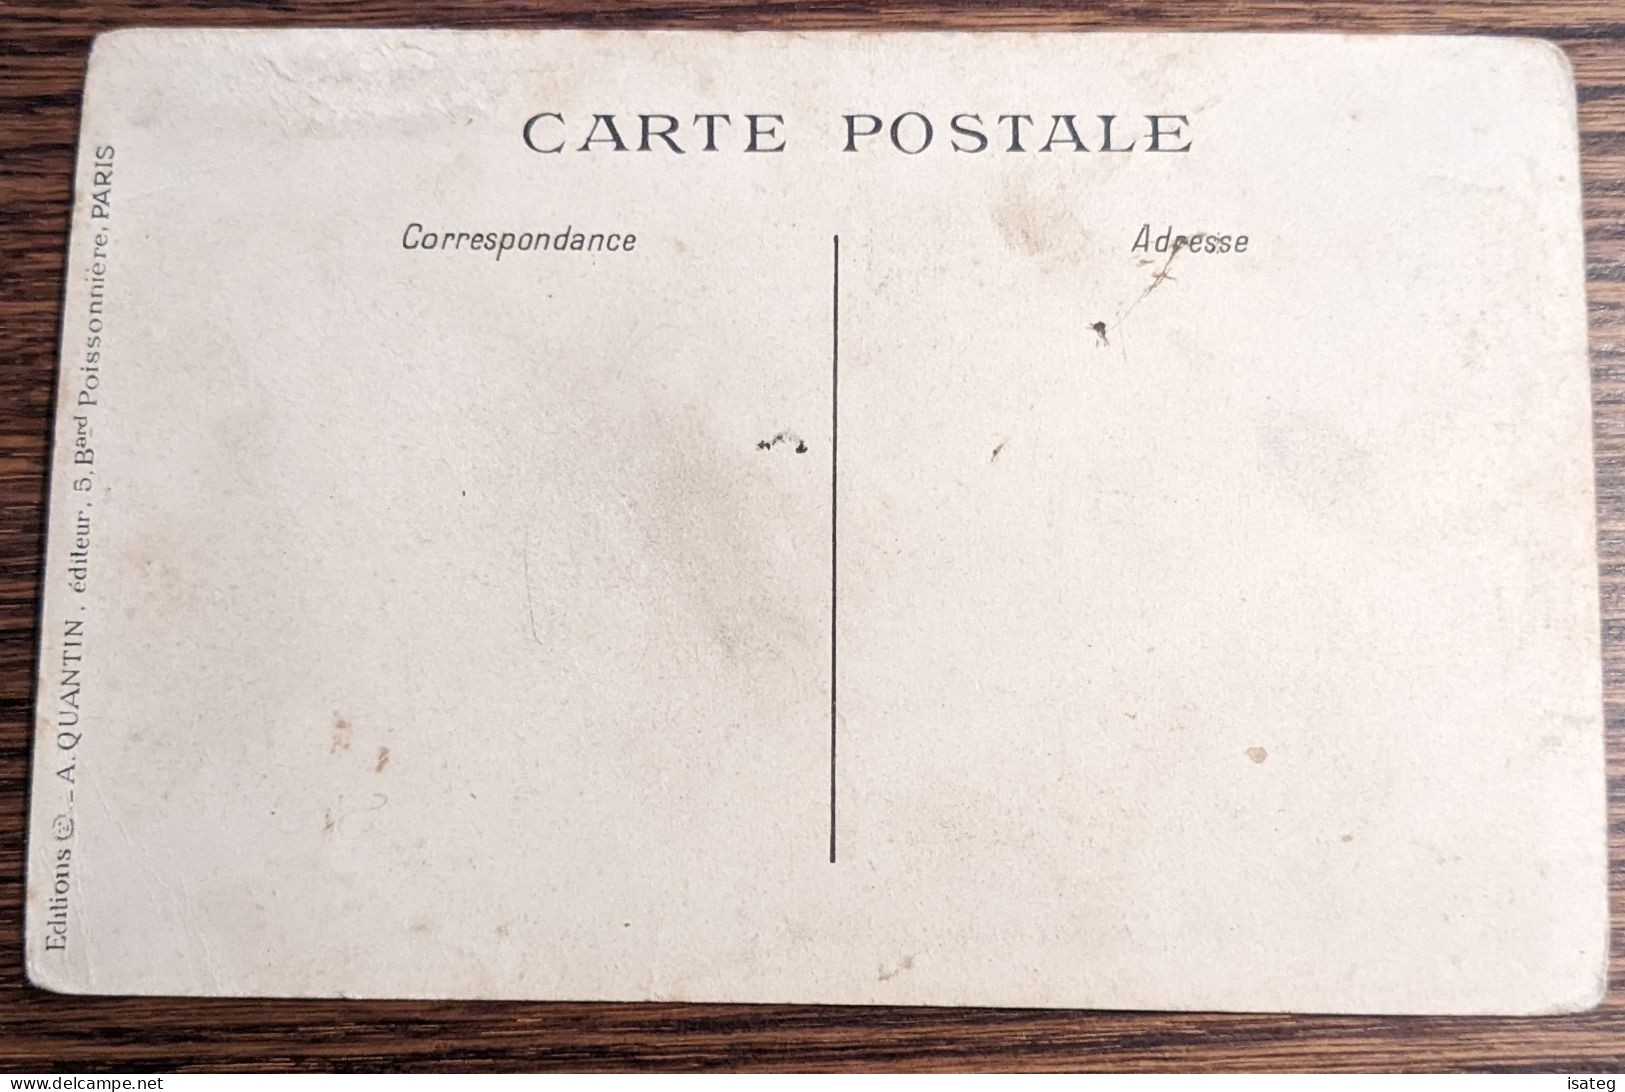 Carte Postale Ancienne Colorisée : Environs De Paris - Non Classés